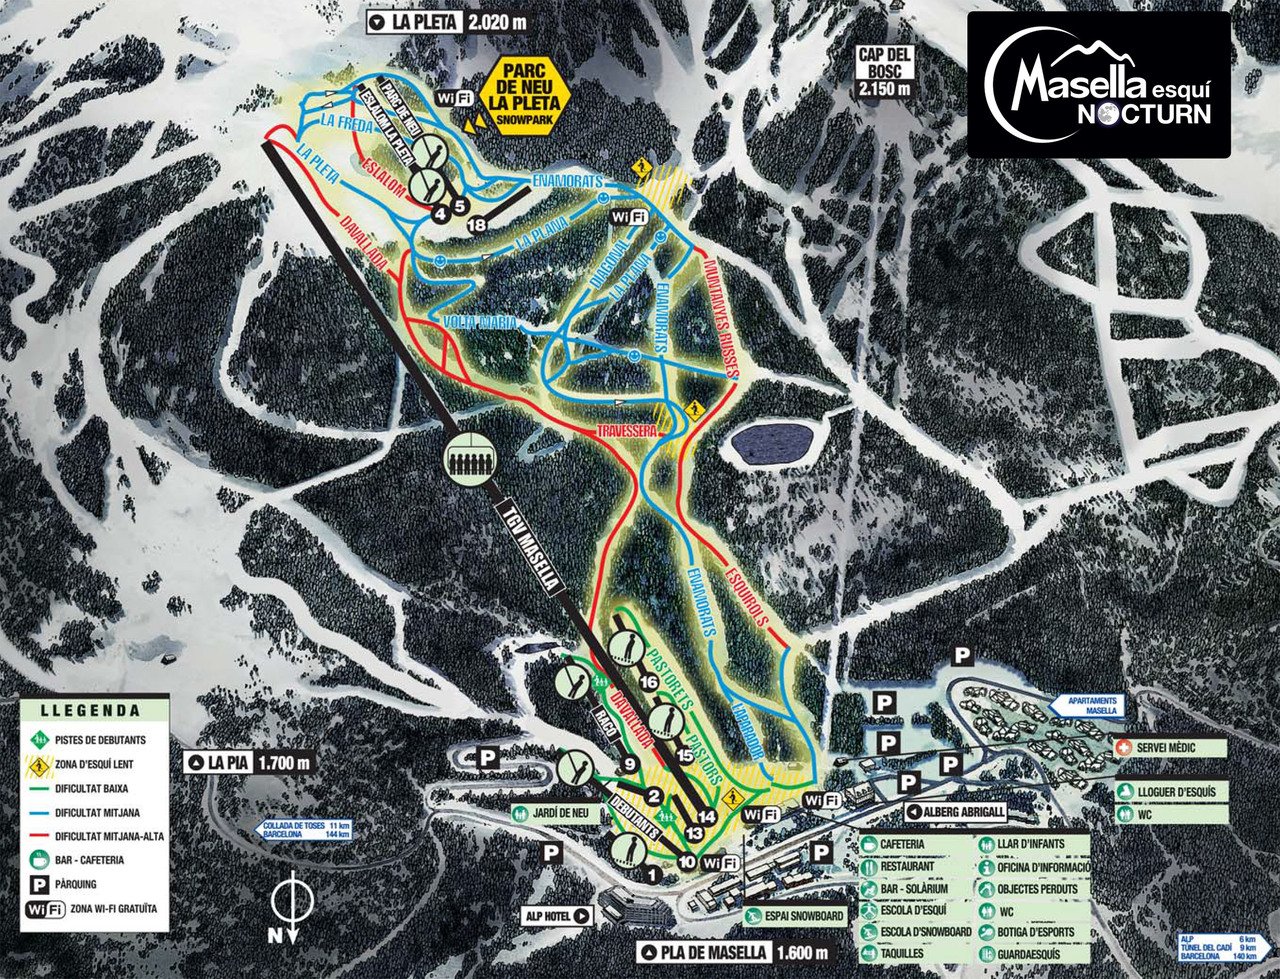 Plano pistas esqui nocturno de Masella